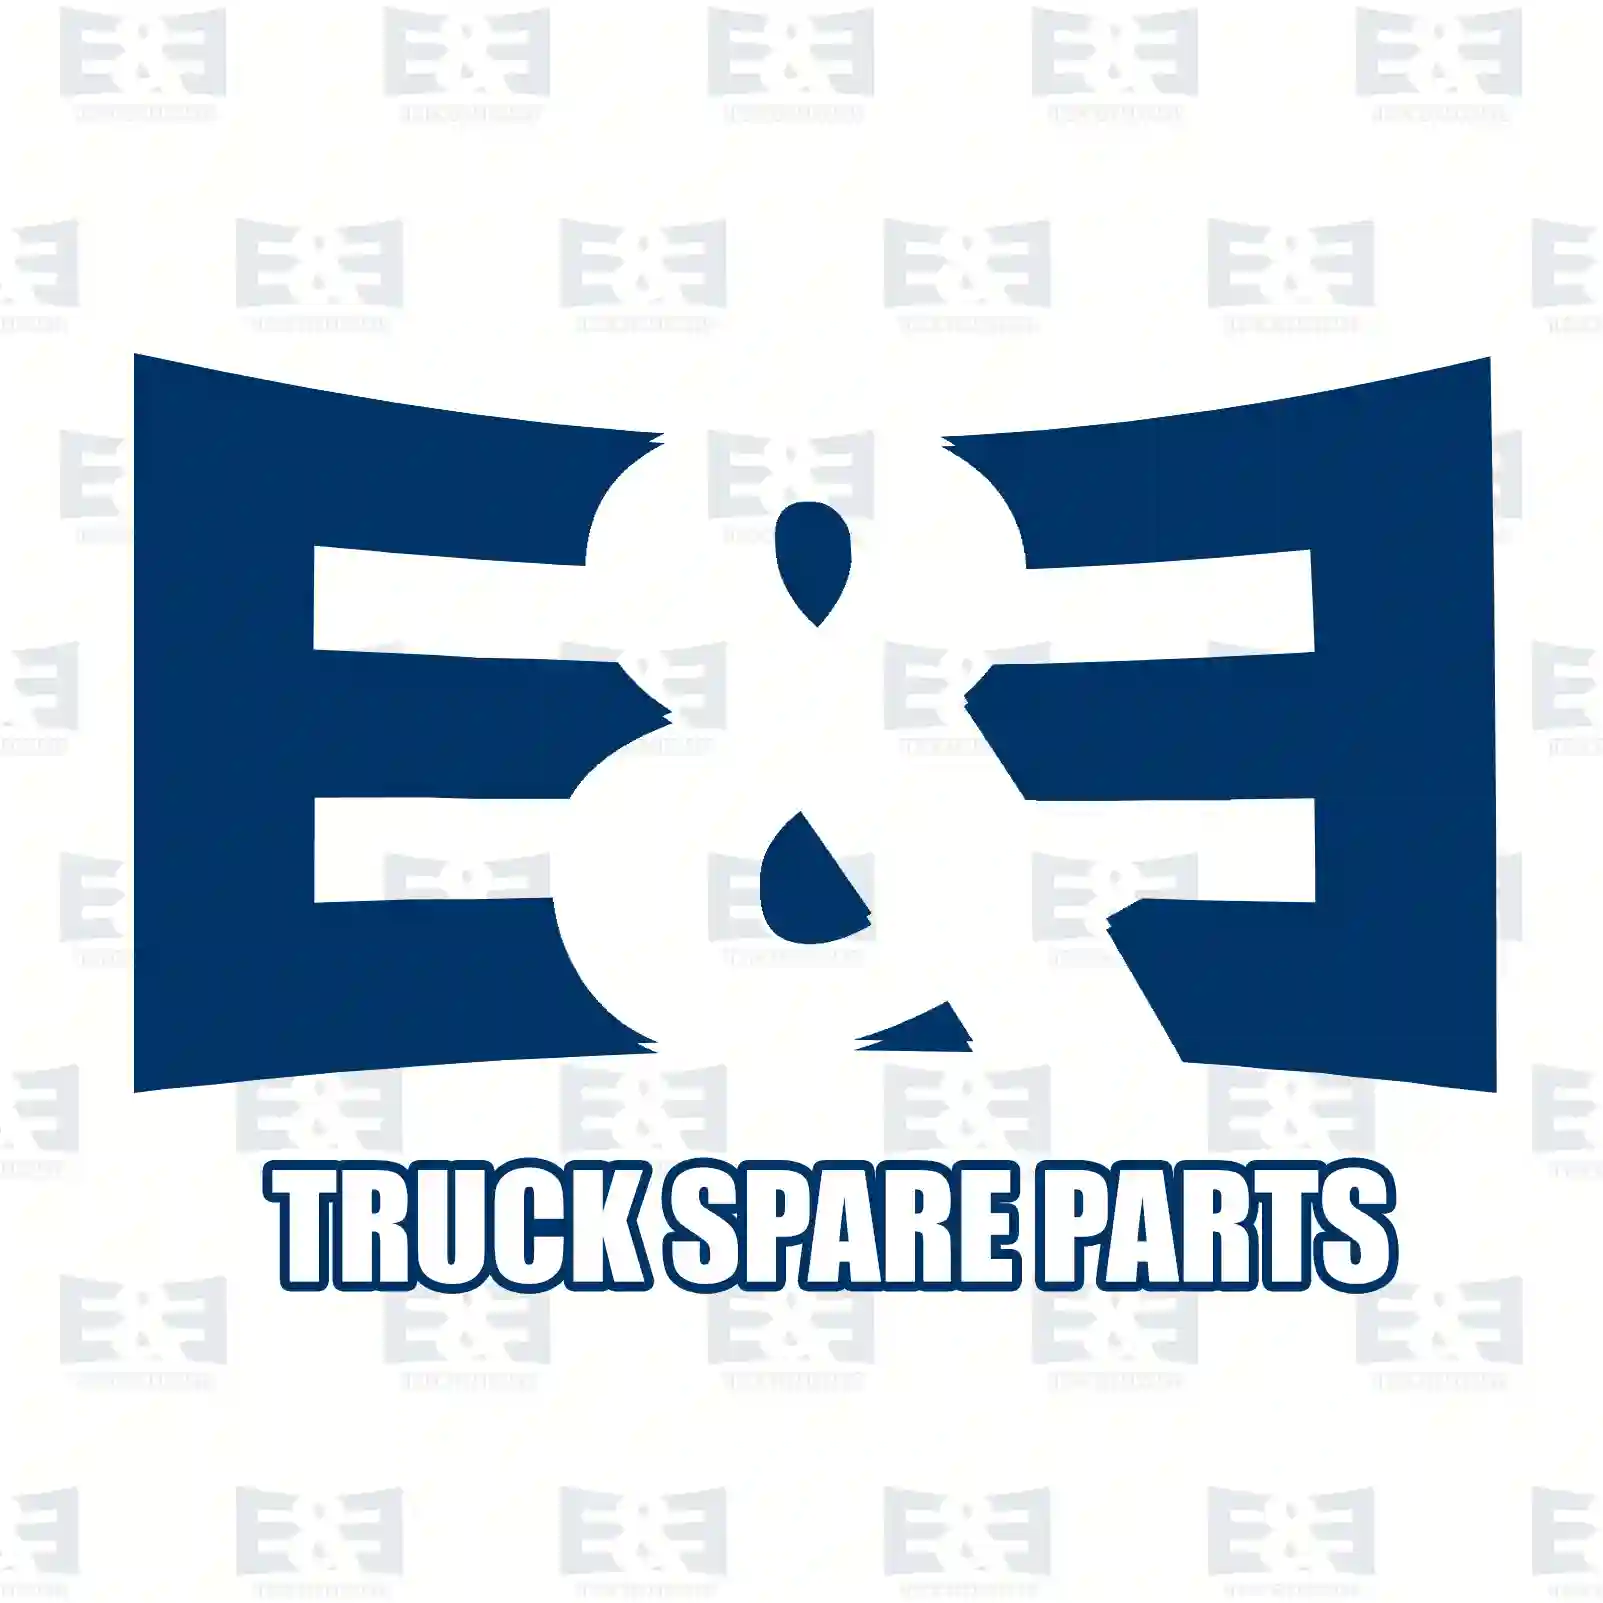 Battery main switch, 2E2297772, 1432437, 1519485, 2079254, 492122, ZG20273-0008 ||  2E2297772 E&E Truck Spare Parts | Truck Spare Parts, Auotomotive Spare Parts Battery main switch, 2E2297772, 1432437, 1519485, 2079254, 492122, ZG20273-0008 ||  2E2297772 E&E Truck Spare Parts | Truck Spare Parts, Auotomotive Spare Parts